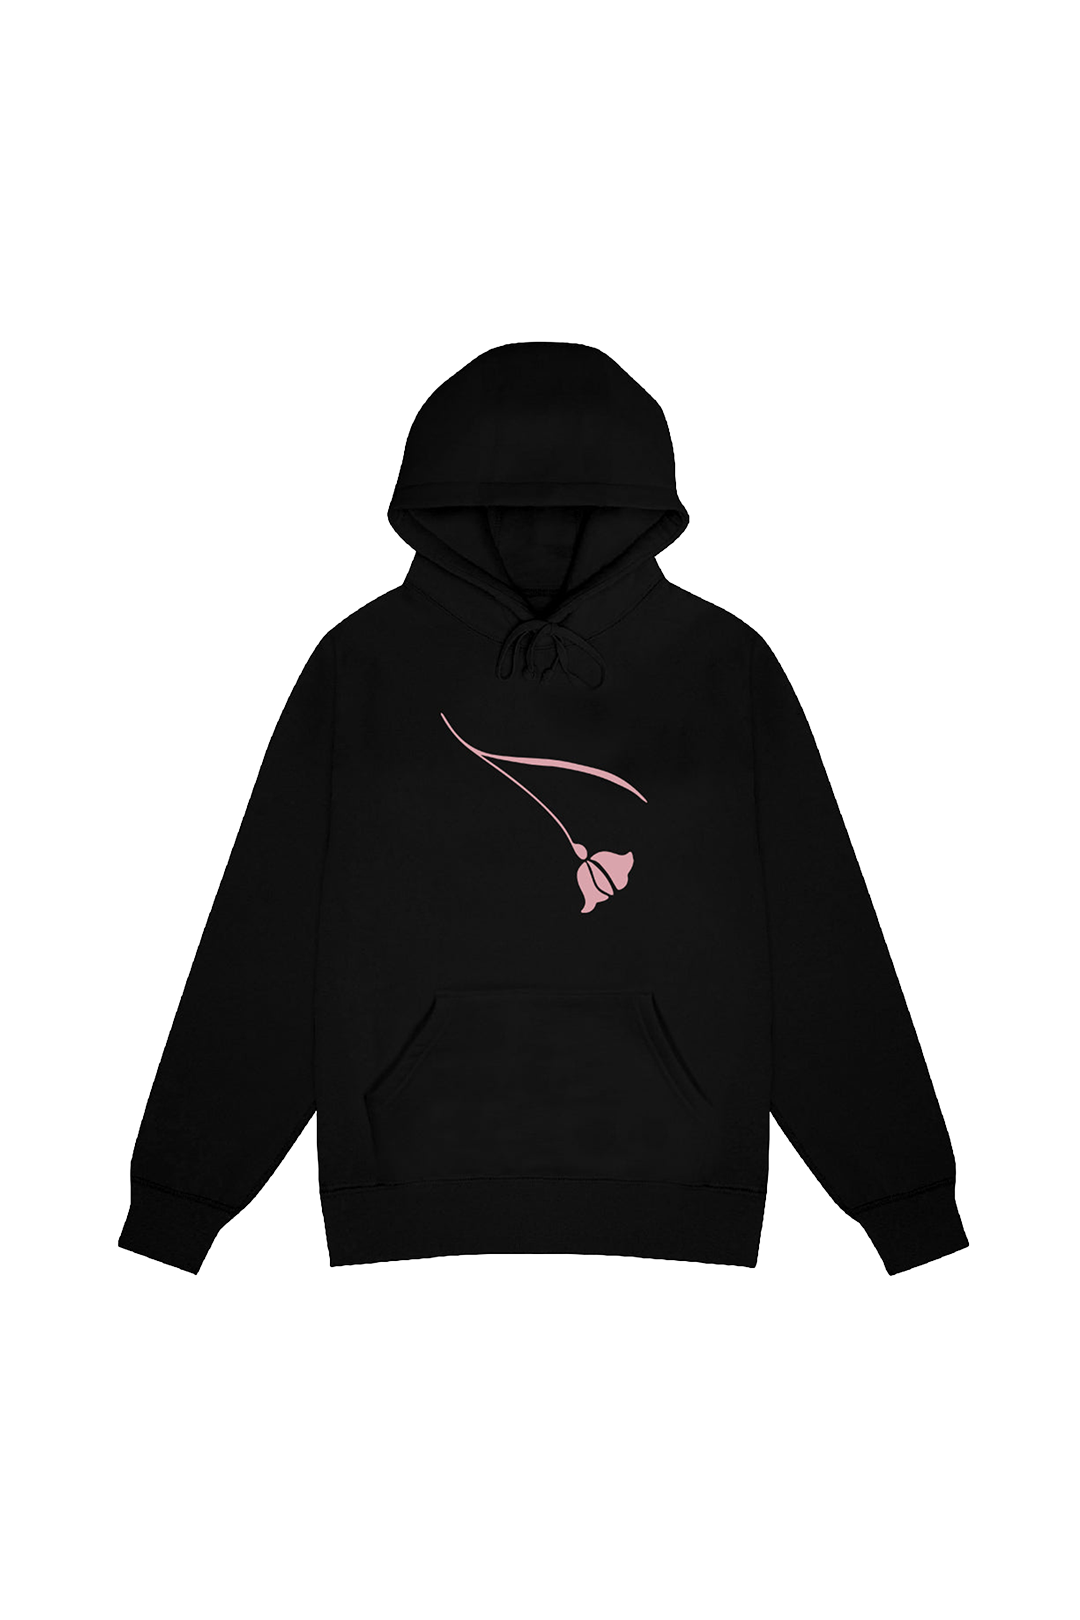 PEONIES・Unisex hoodie・Black